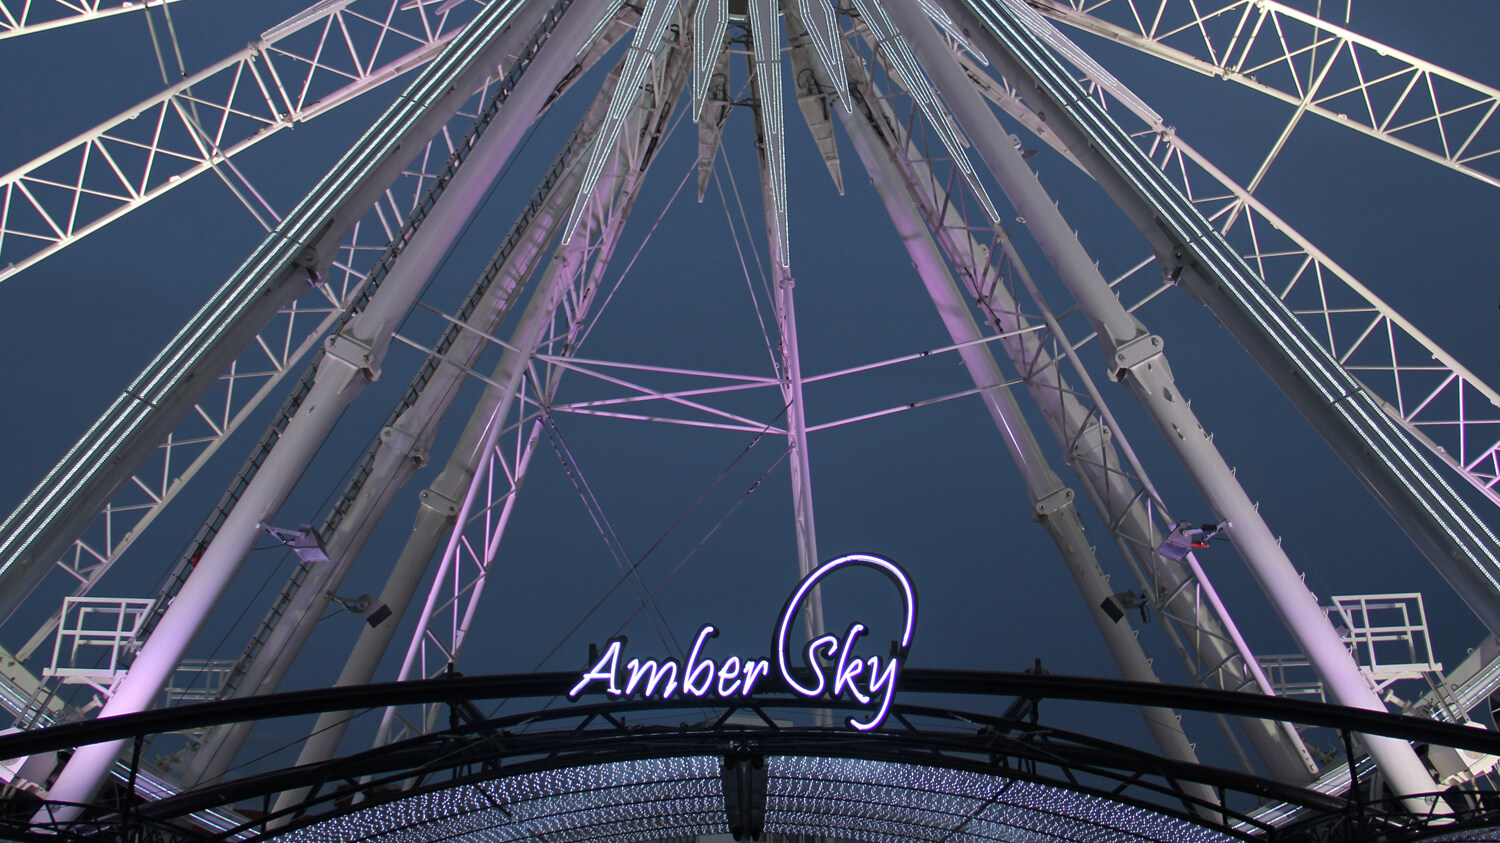 Amber Sky - Amber Sky - enseigne au néon blanche avec le nom de la société placée sur le support.